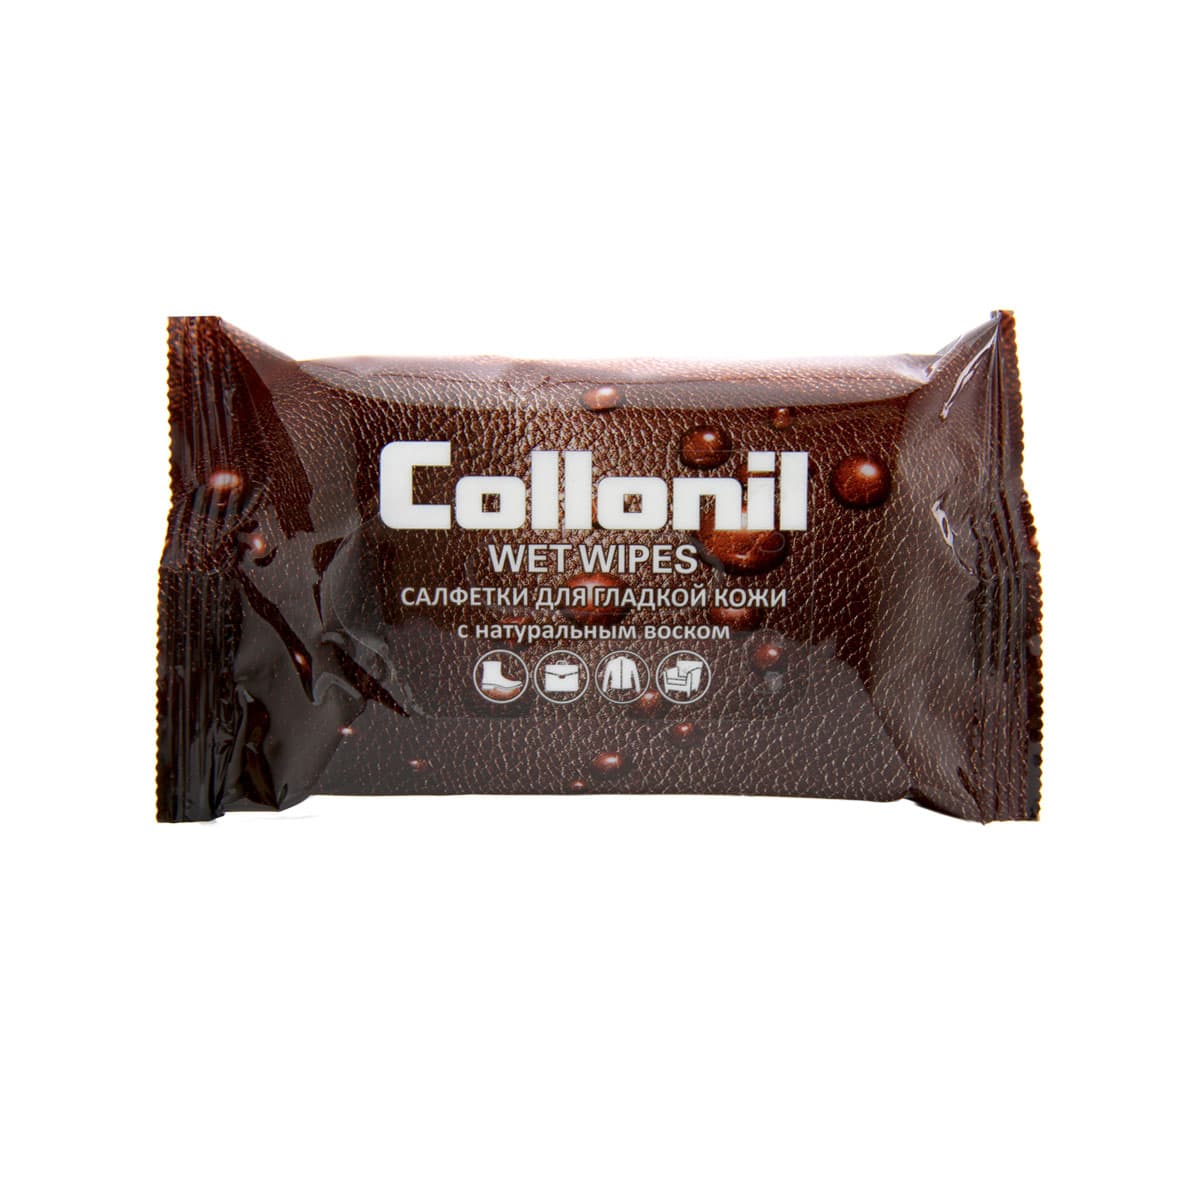 Влажные салфетки для гладкой кожи Collonil 15 шт фотографии